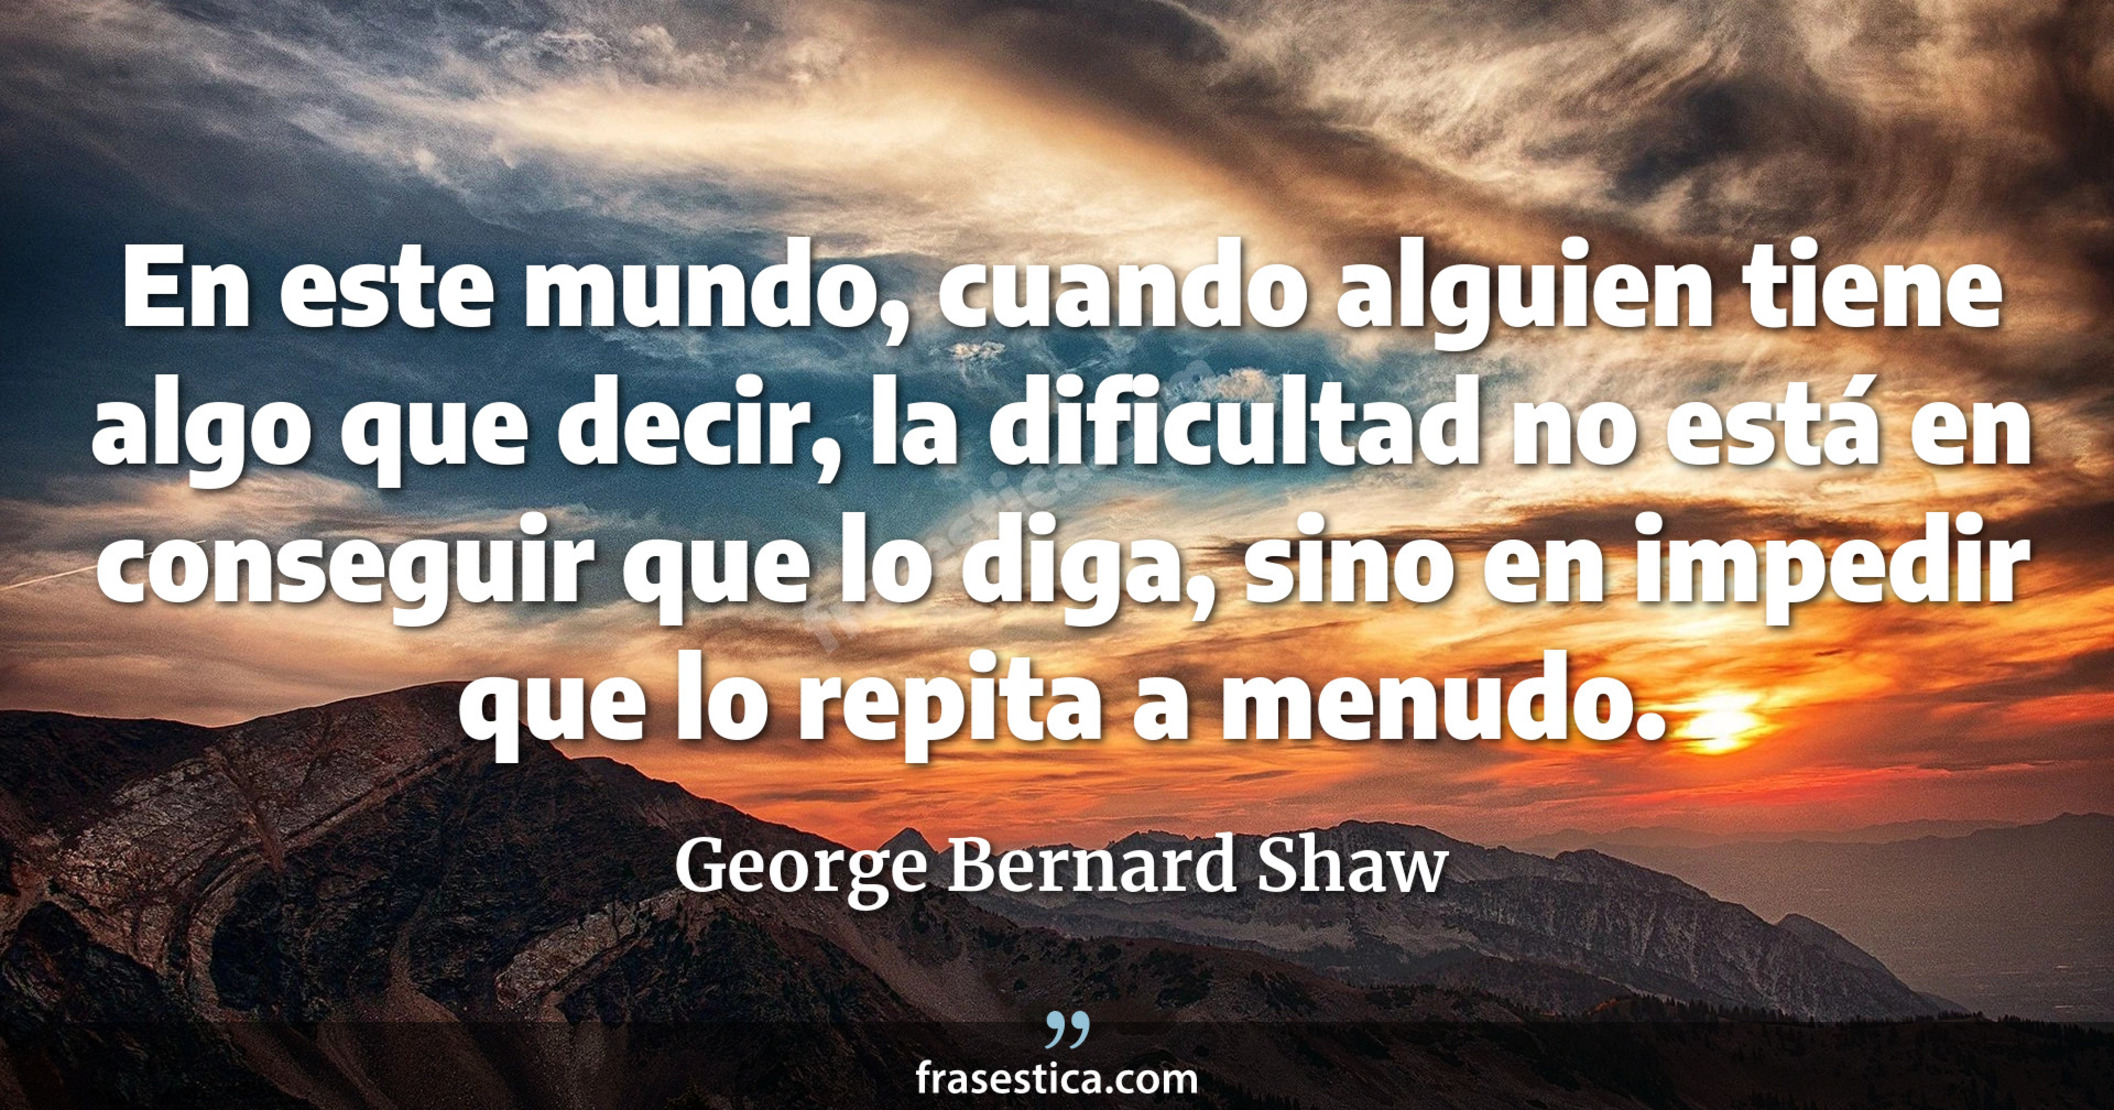 En este mundo, cuando alguien tiene algo que decir, la dificultad no está en conseguir que lo diga, sino en impedir que lo repita a menudo. - George Bernard Shaw